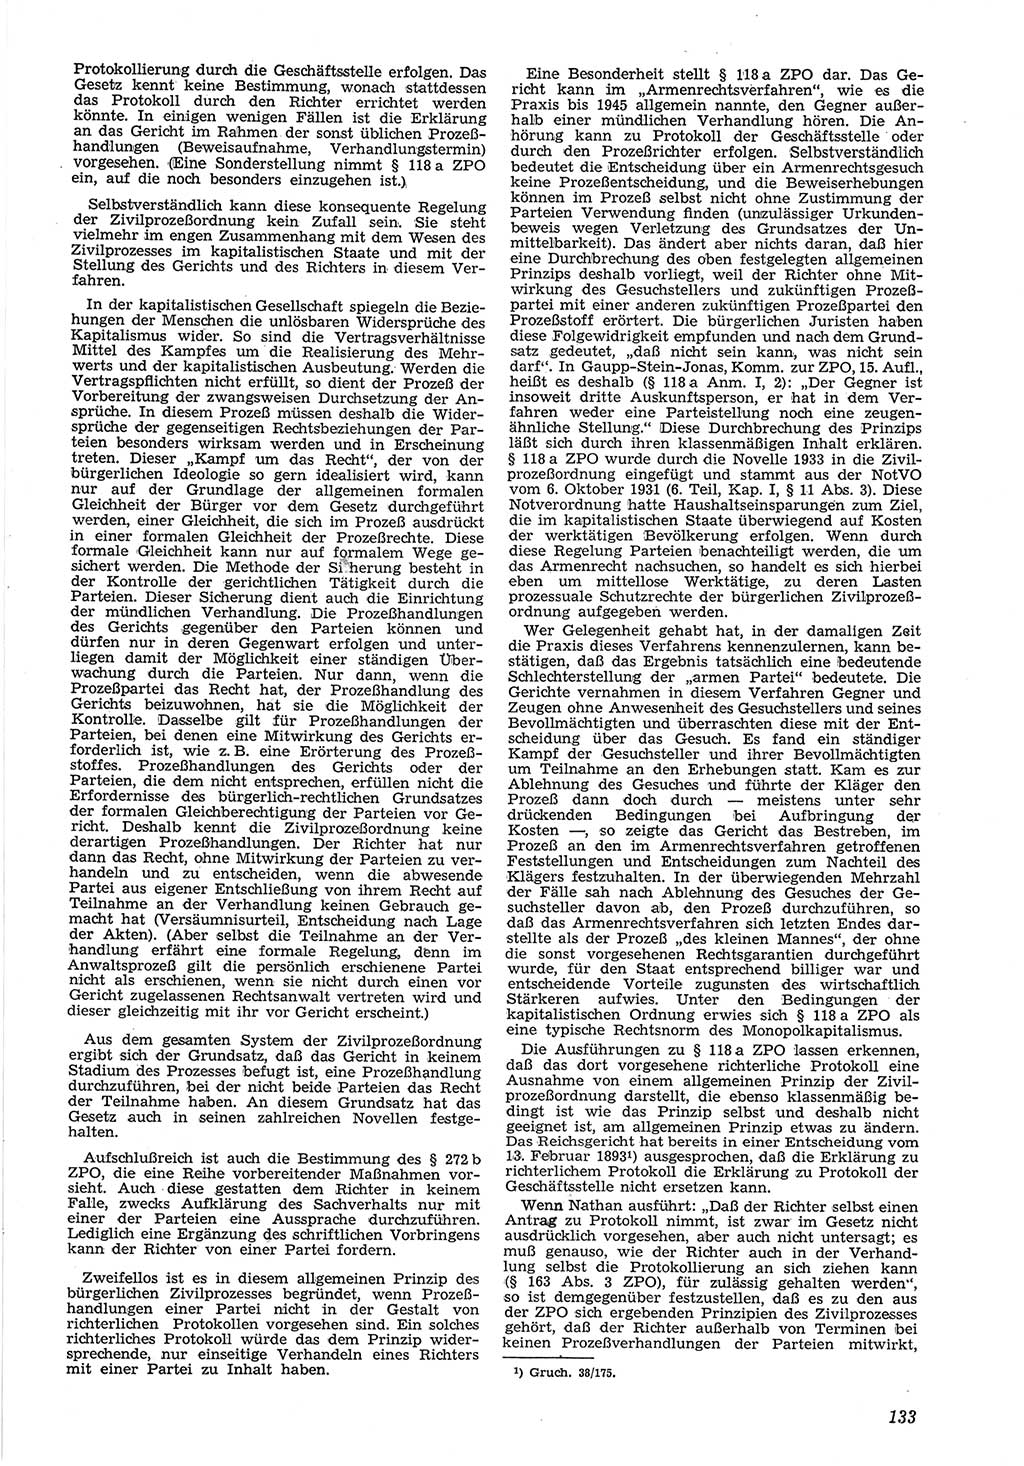 Neue Justiz (NJ), Zeitschrift für Recht und Rechtswissenschaft [Deutsche Demokratische Republik (DDR)], 8. Jahrgang 1954, Seite 133 (NJ DDR 1954, S. 133)